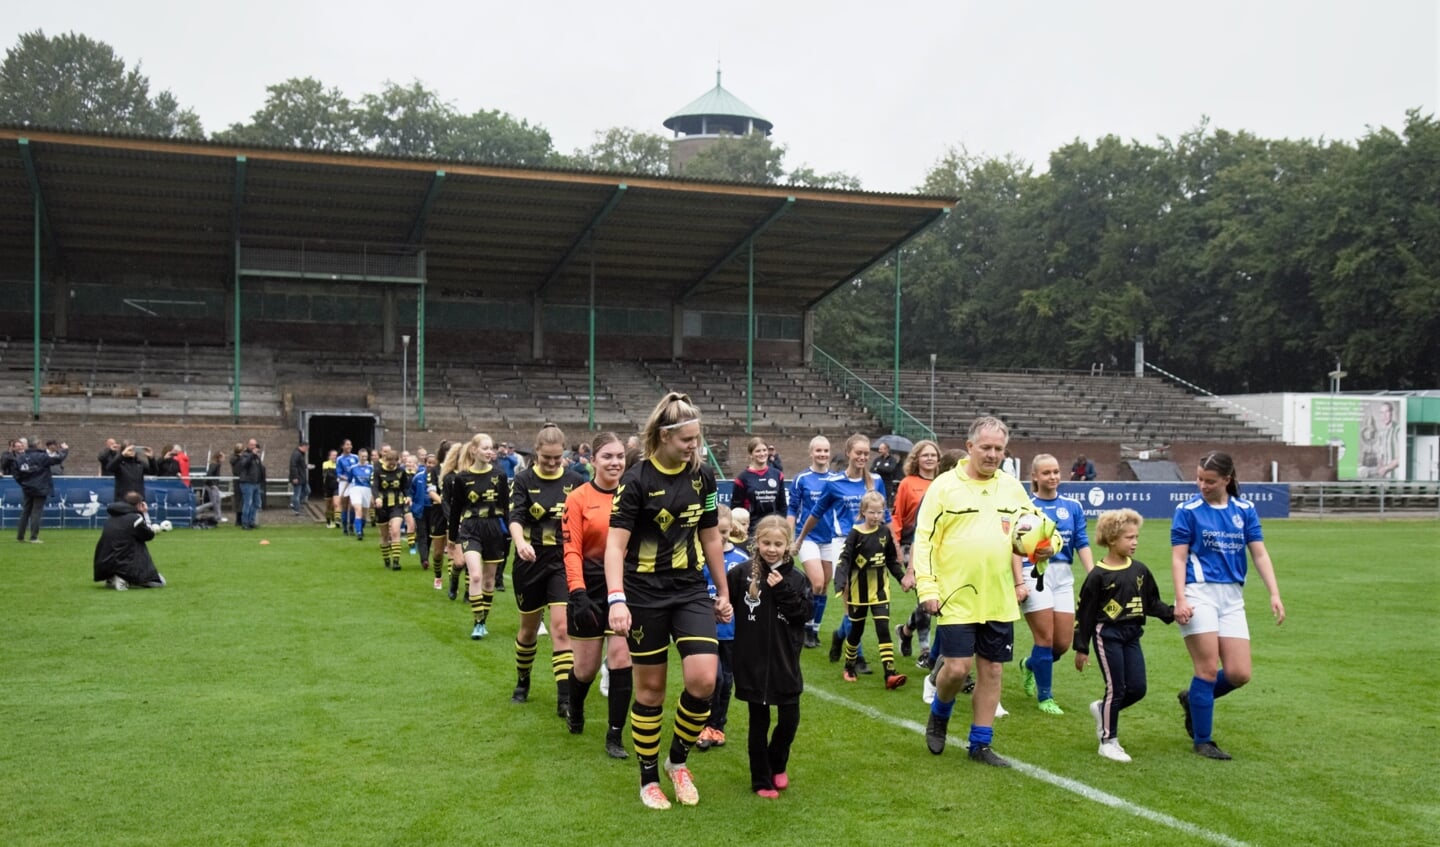 Ondanks de motregen in de tweede helft, werd er enthousiast gevoetbald tussen de meiden van Redichem en SKV.